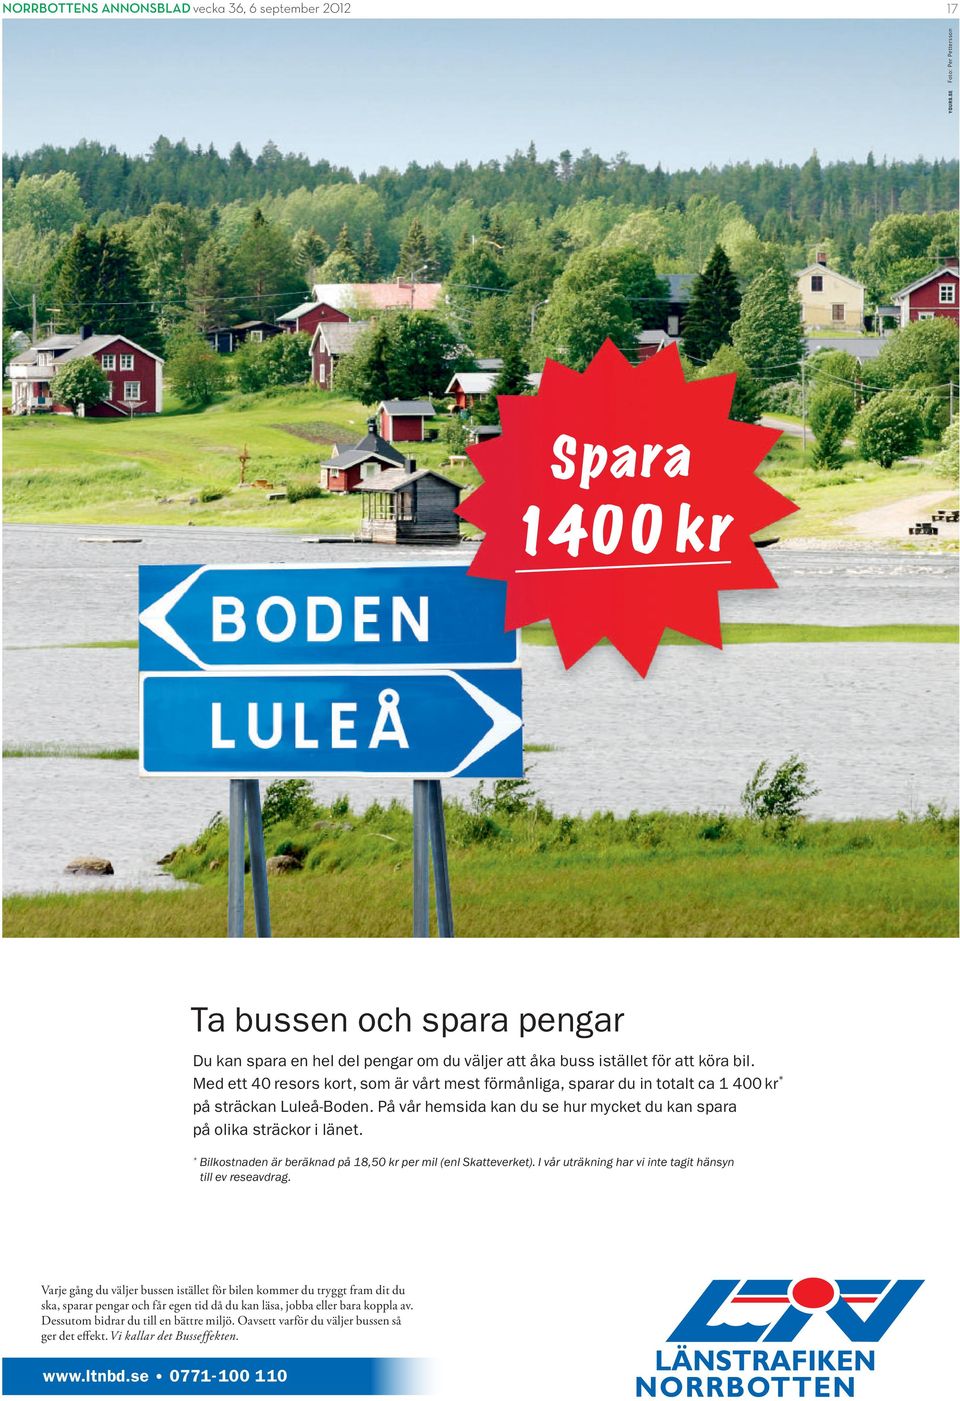 Med ett 40 resors kort, som är vårt mest förmånliga, sparar du in totalt ca 1 400 kr * på sträckan Luleå-Boden. På vår hemsida kan du se hur mycket du kan spara på olika sträckor i länet.